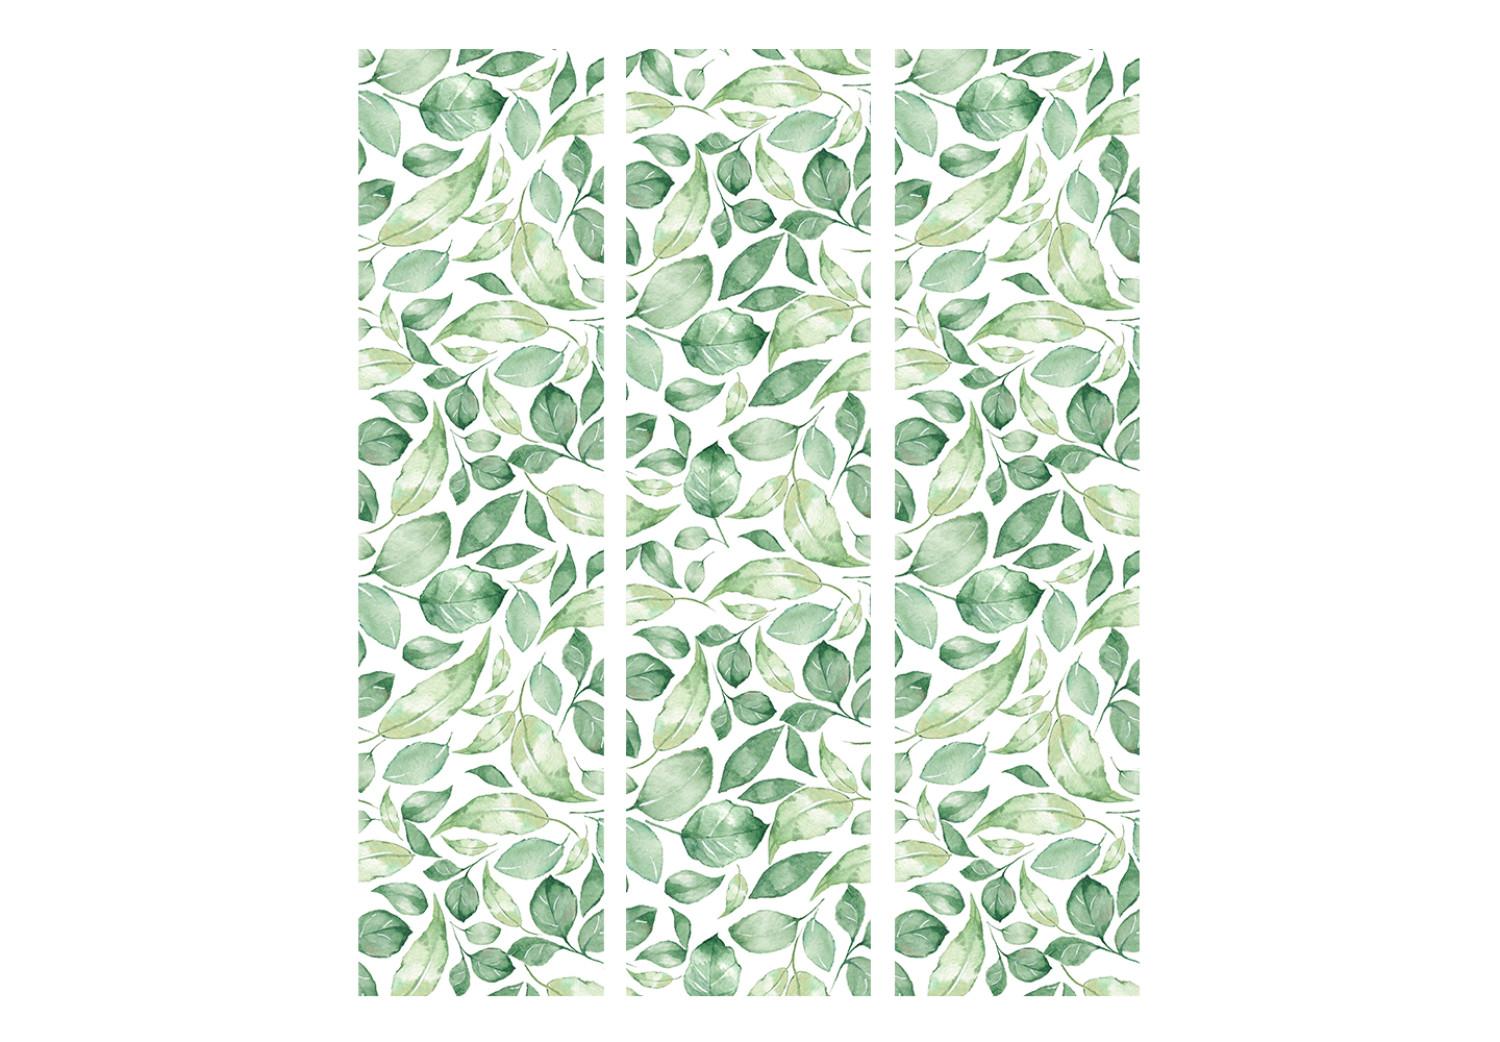 Biombo barato Belleza natural (3 partes): patrón de hojas verdes sobre fondo claro